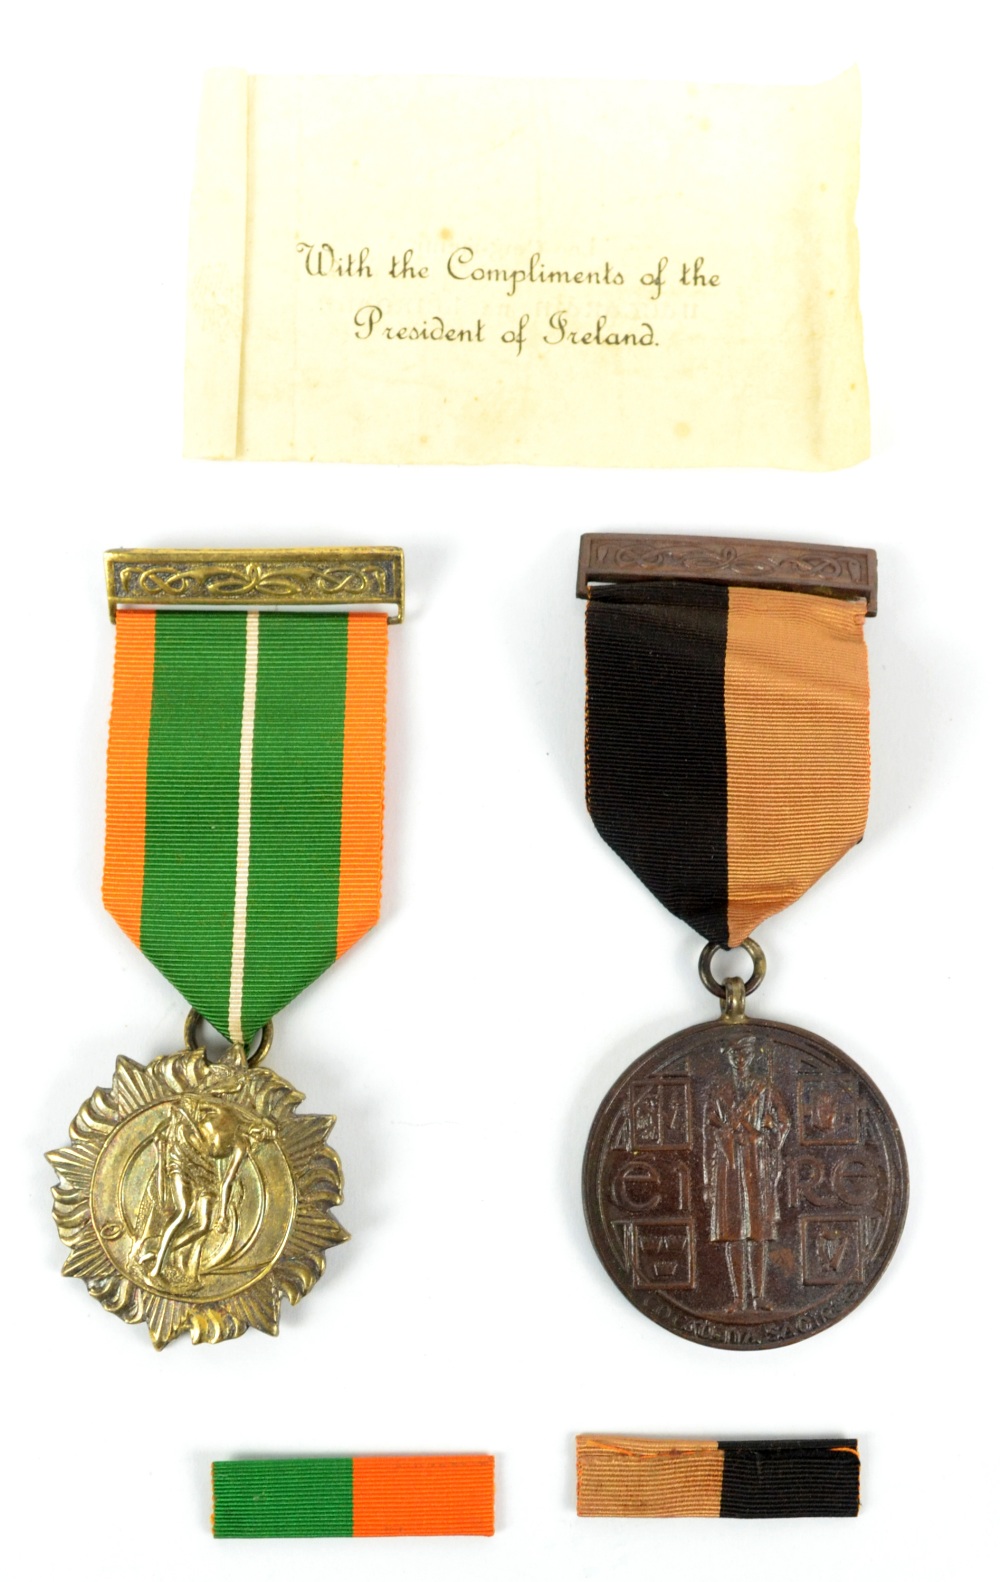 Lot 283 A rare Irish 1916-1966 Easter Rising Survivor's Medal